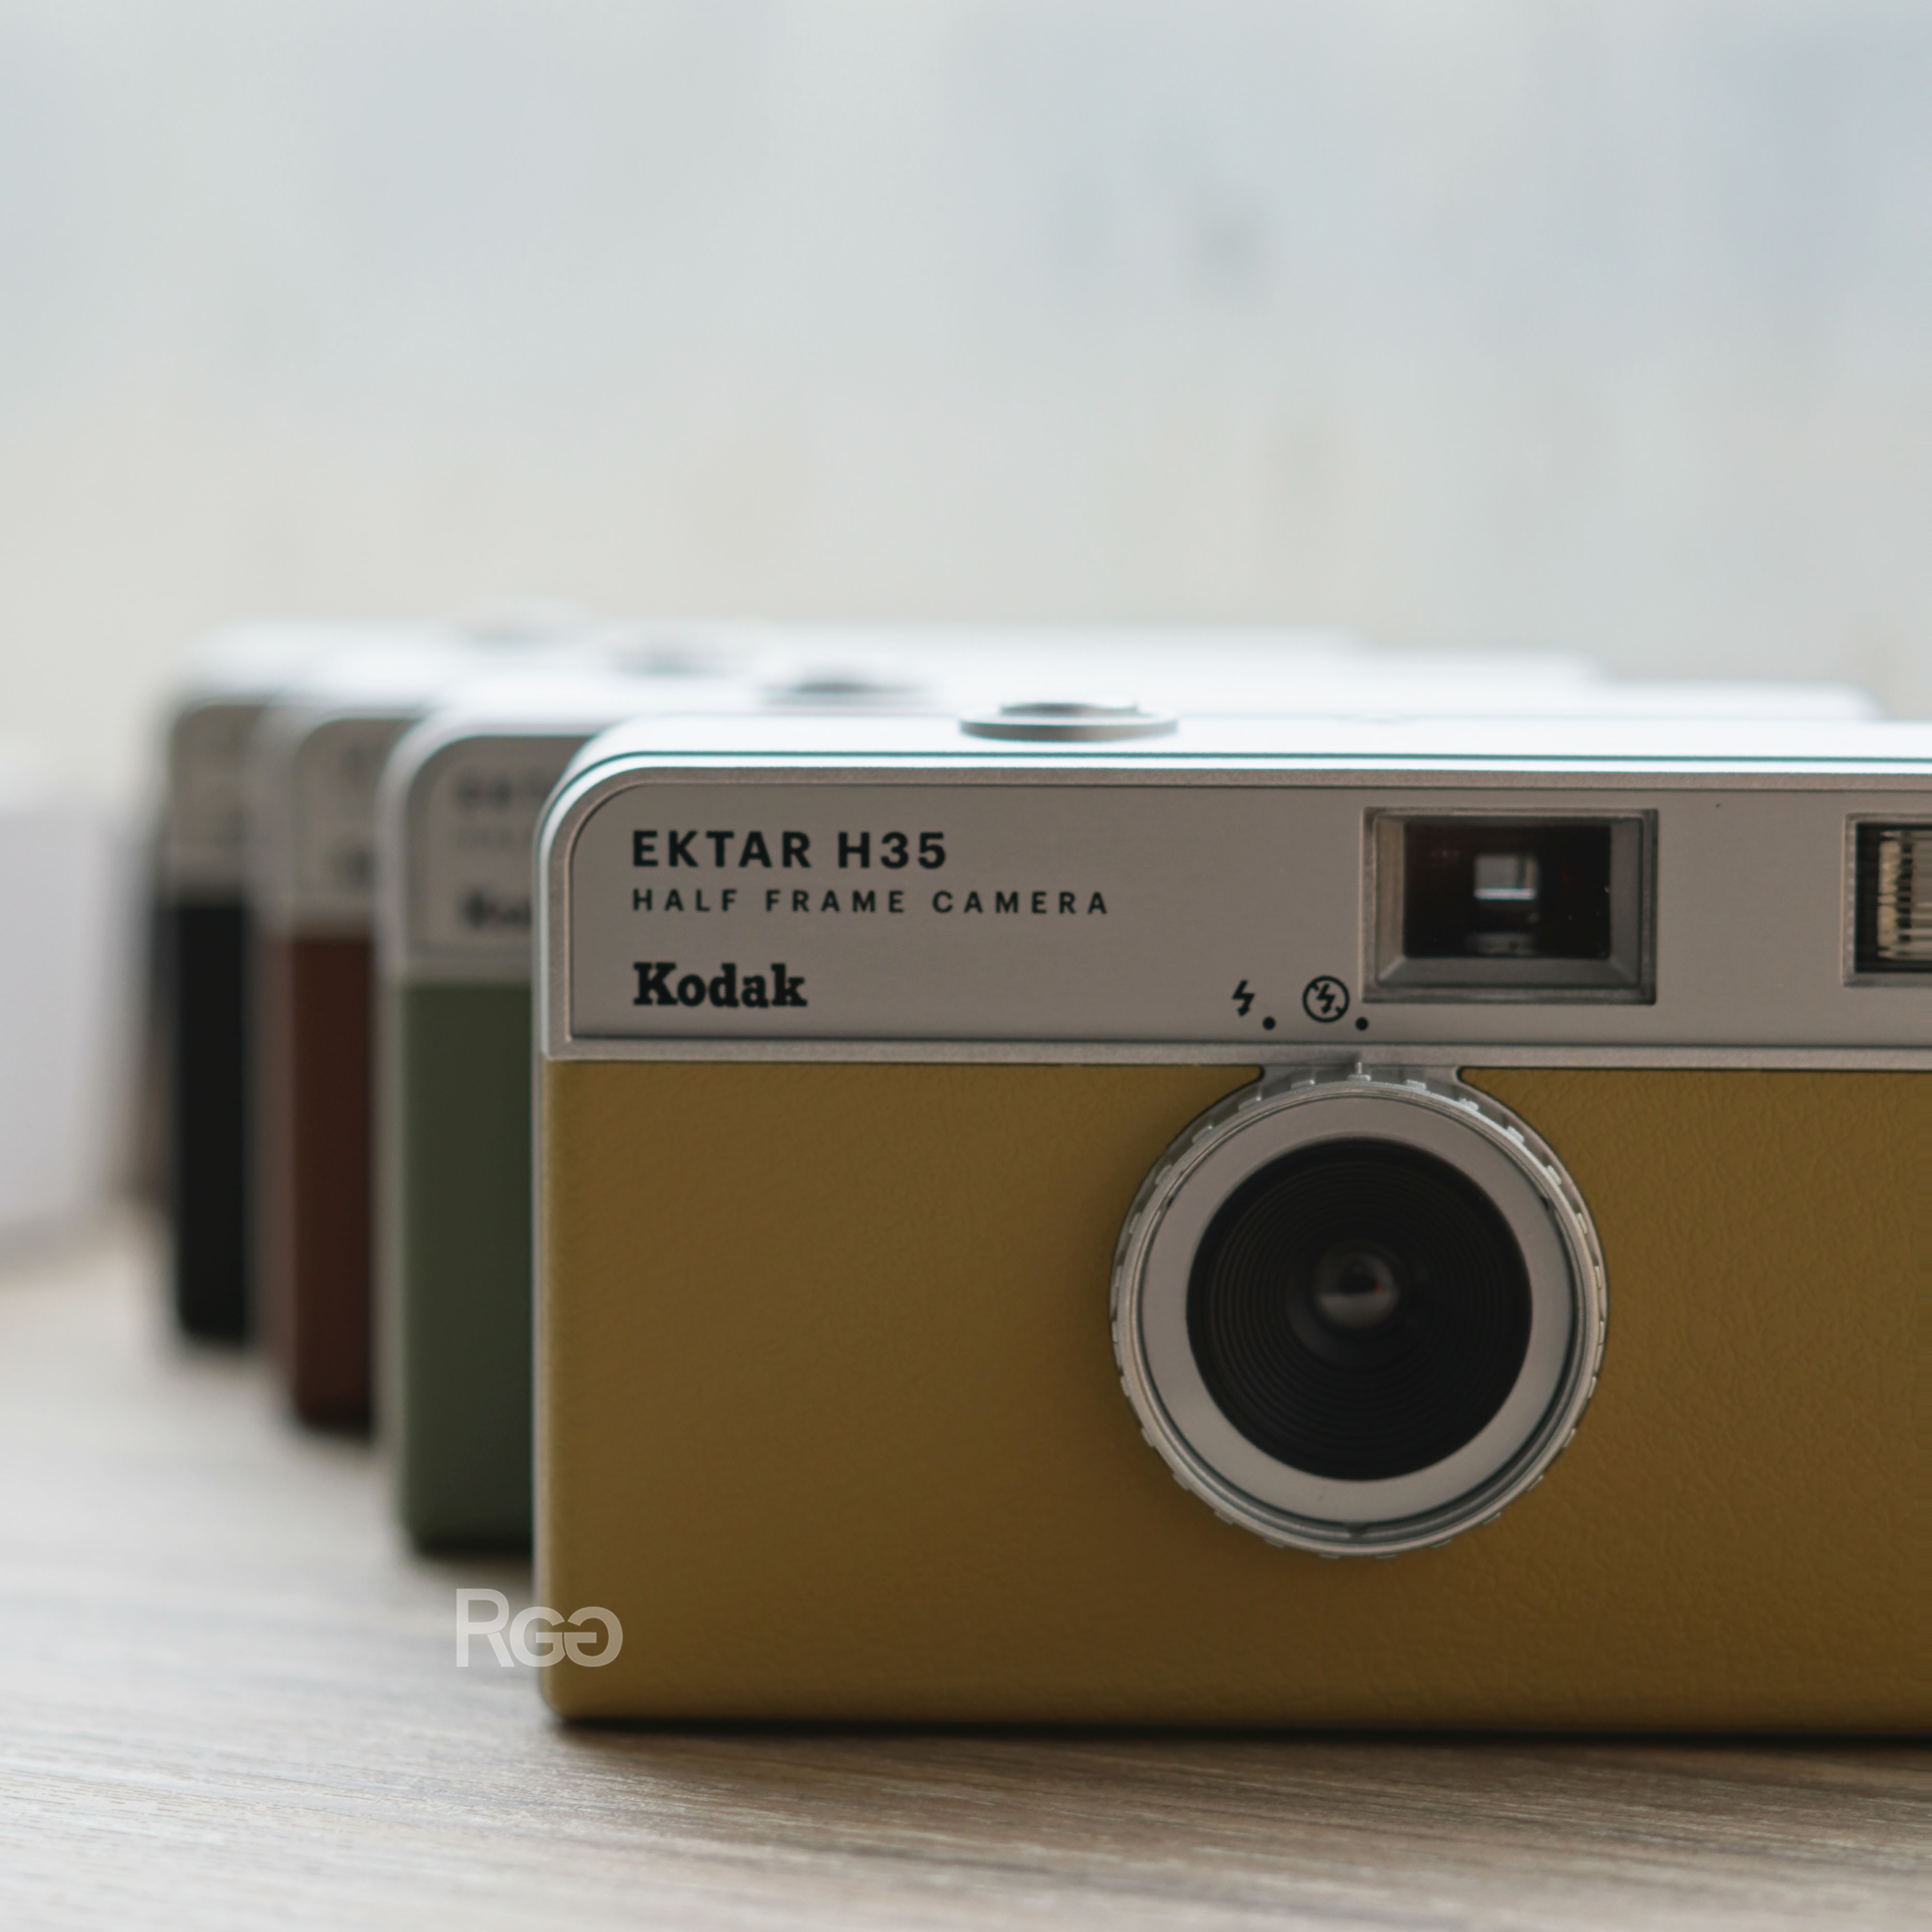 柯達Kodak EKTAR H35 半格底片相機